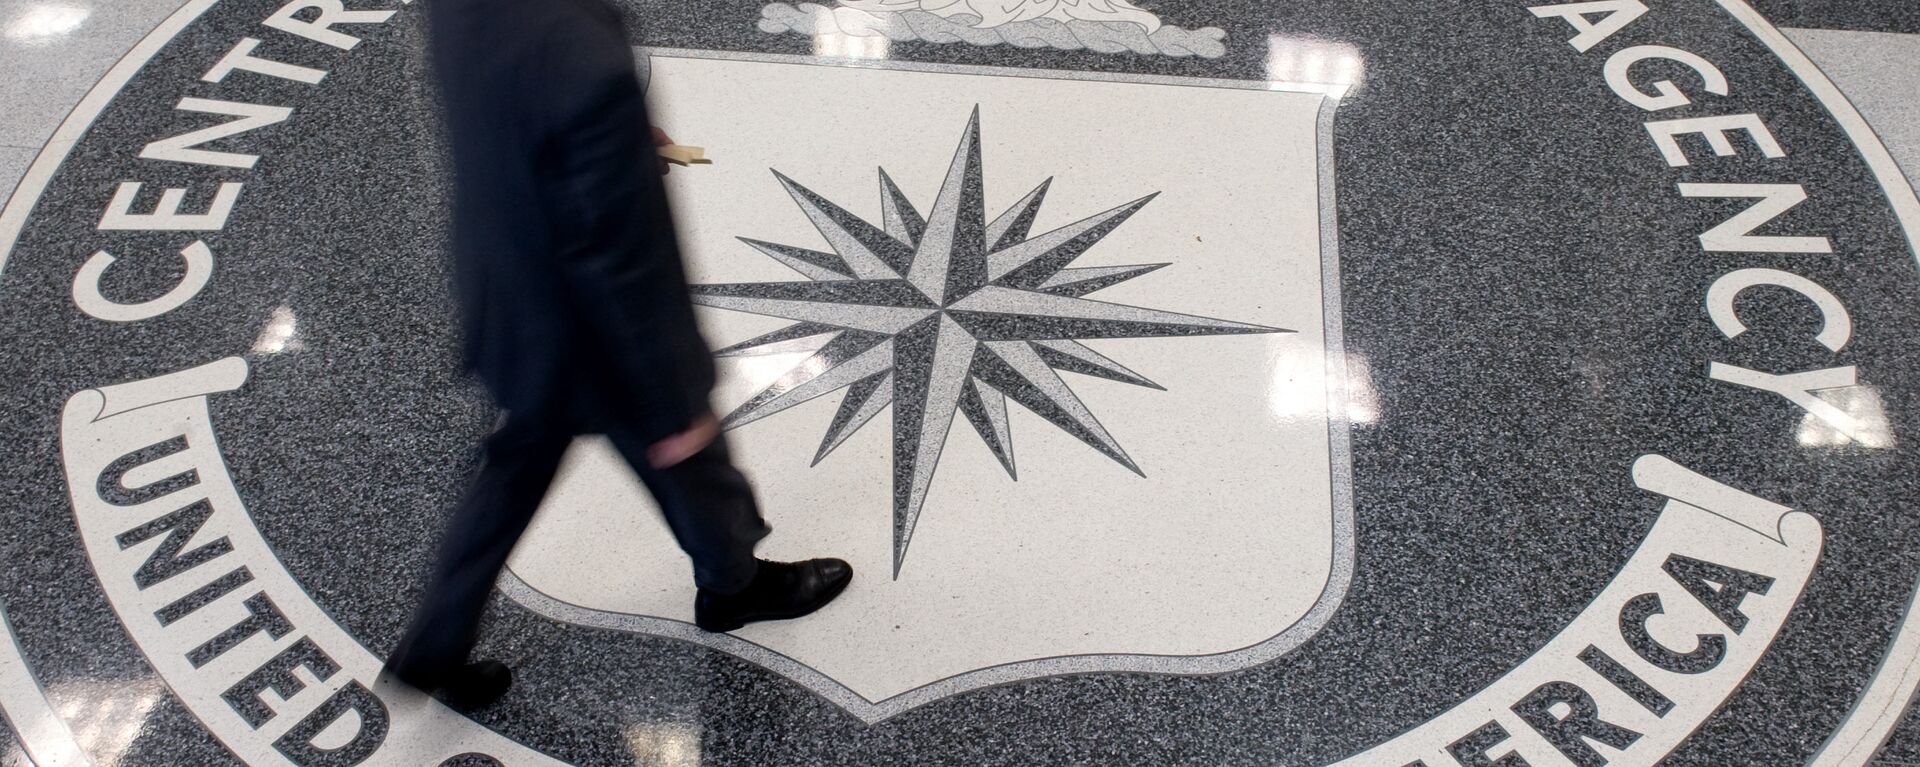 El logo de la CIA - Sputnik Mundo, 1920, 19.02.2021